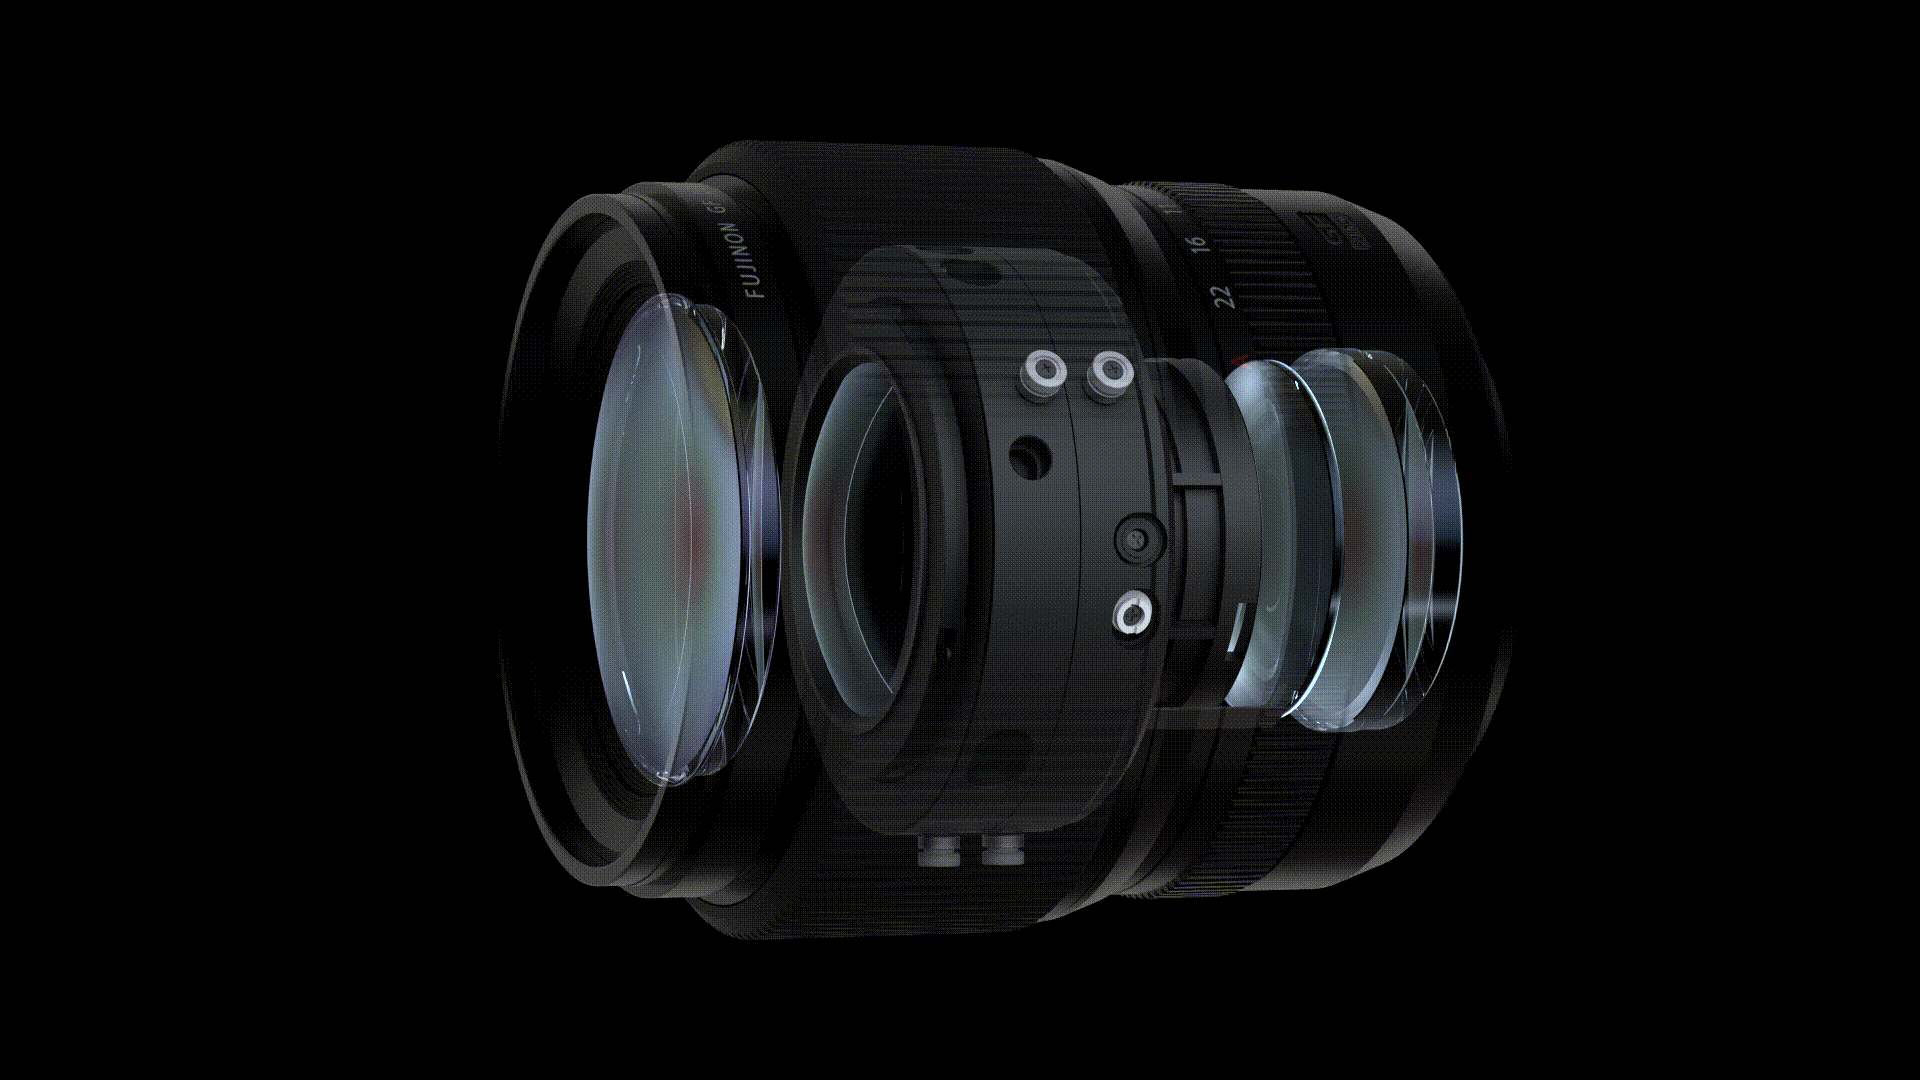 Fujifilm GF80mm f1.7 - Ống kính medium format đầu tiên lấy nét tự động